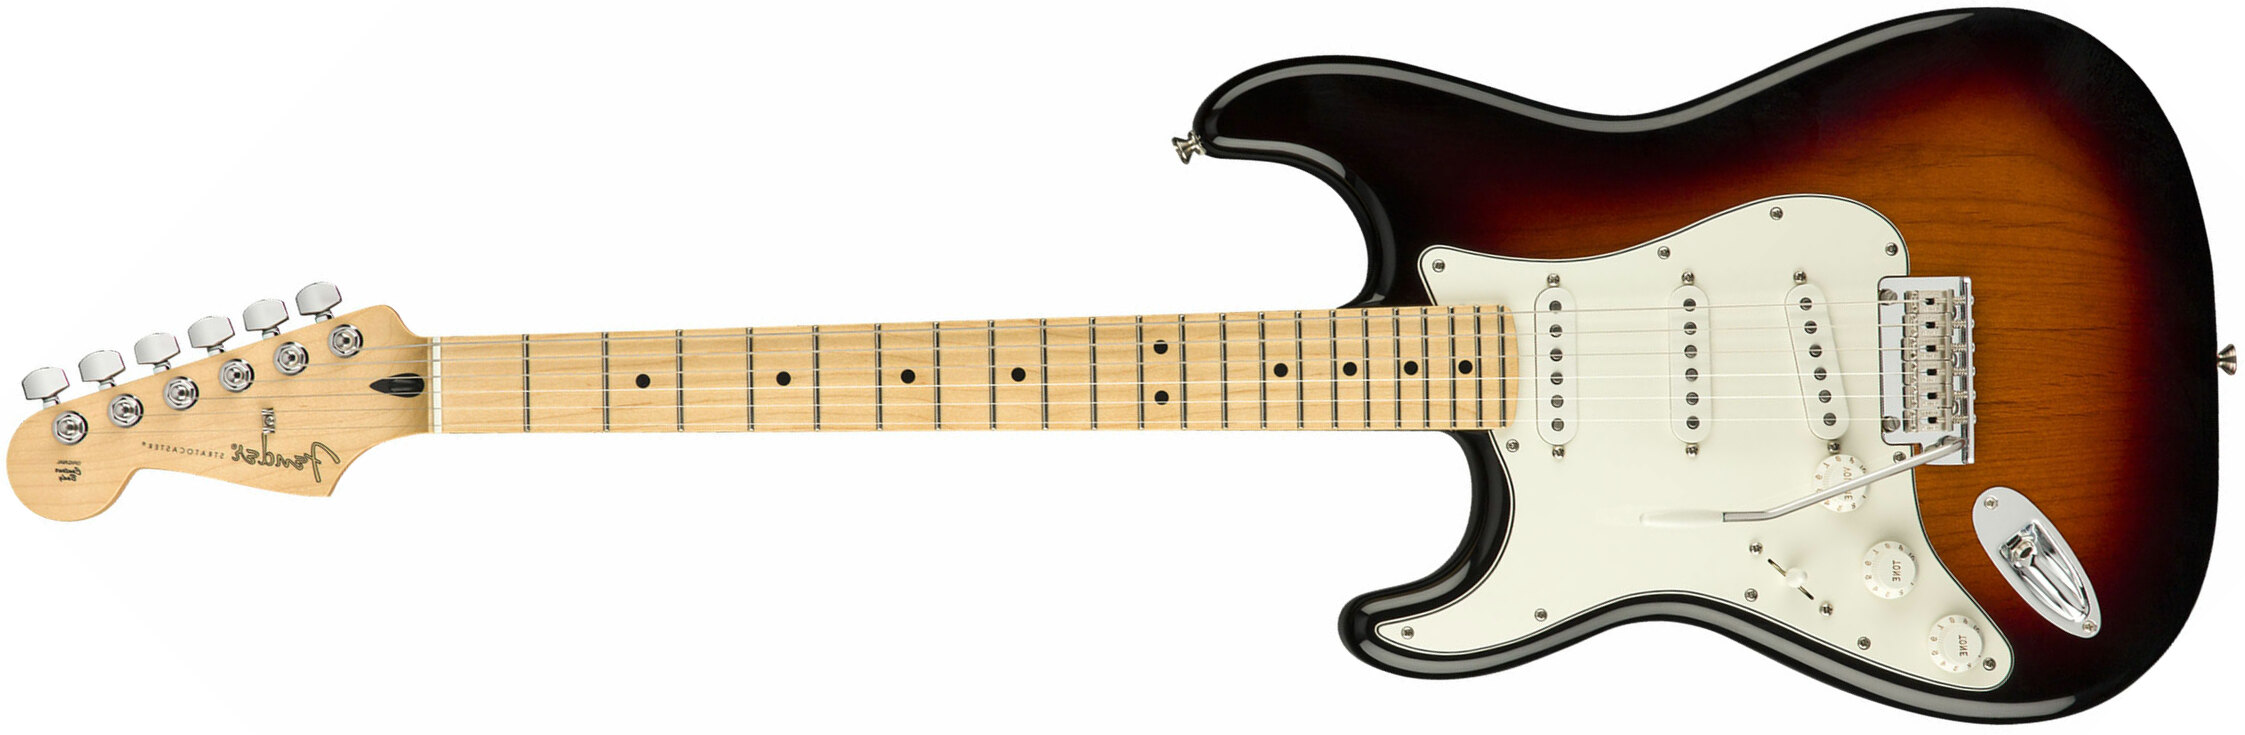 Fender Strat Player Lh Gaucher Mex Sss Mn - 3-color Sunburst - Linkshandige elektrische gitaar - Main picture